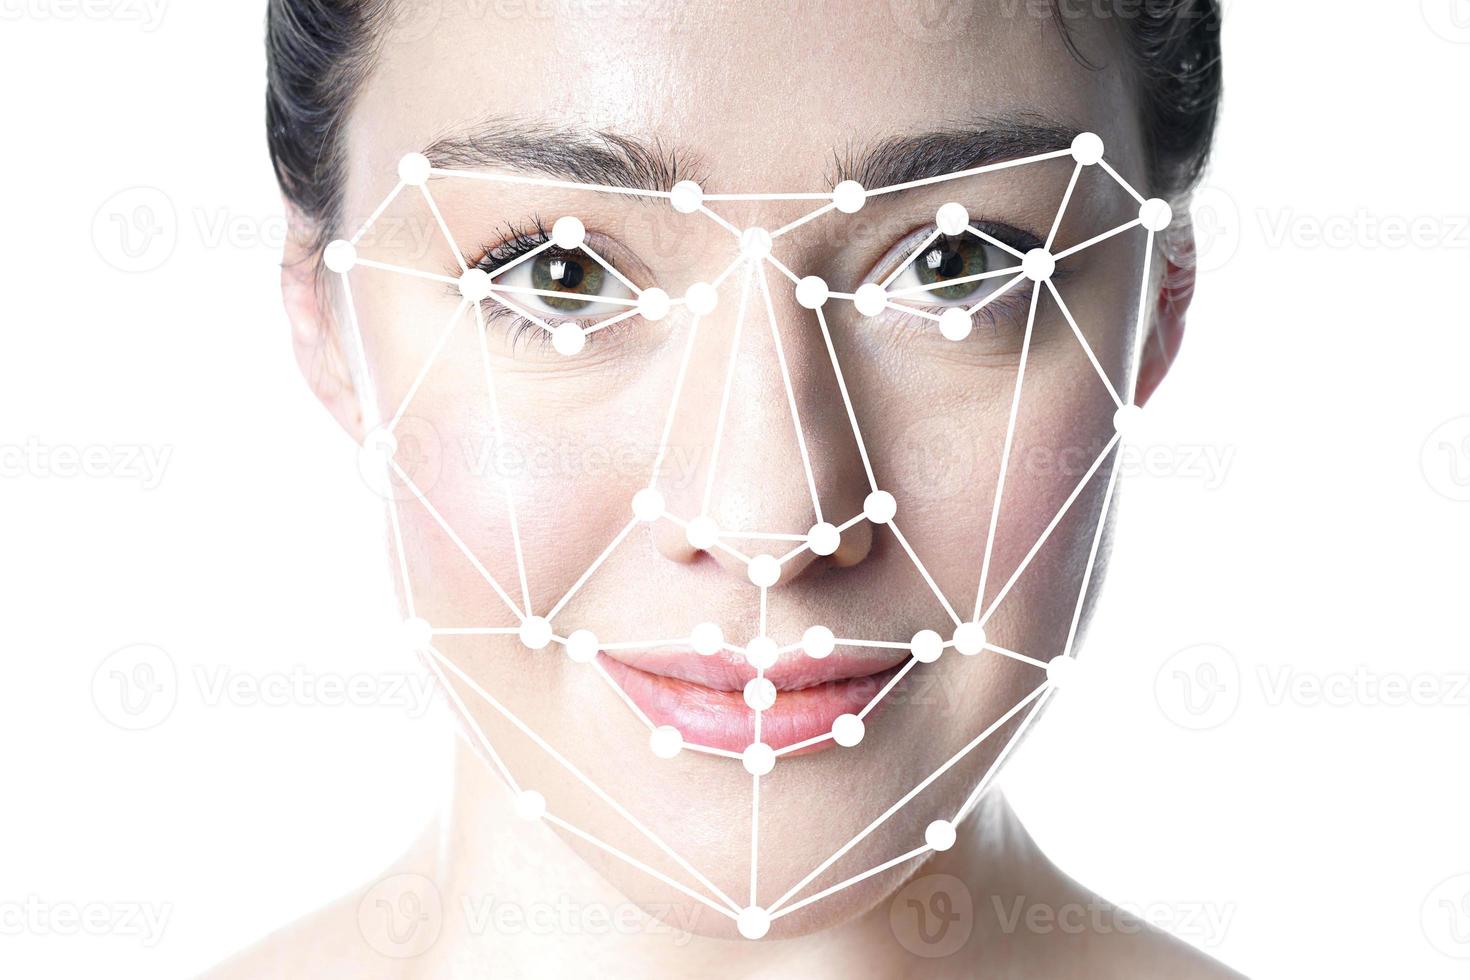 superposición de cuadrícula de detección facial o reconocimiento facial en la cara de la mujer foto